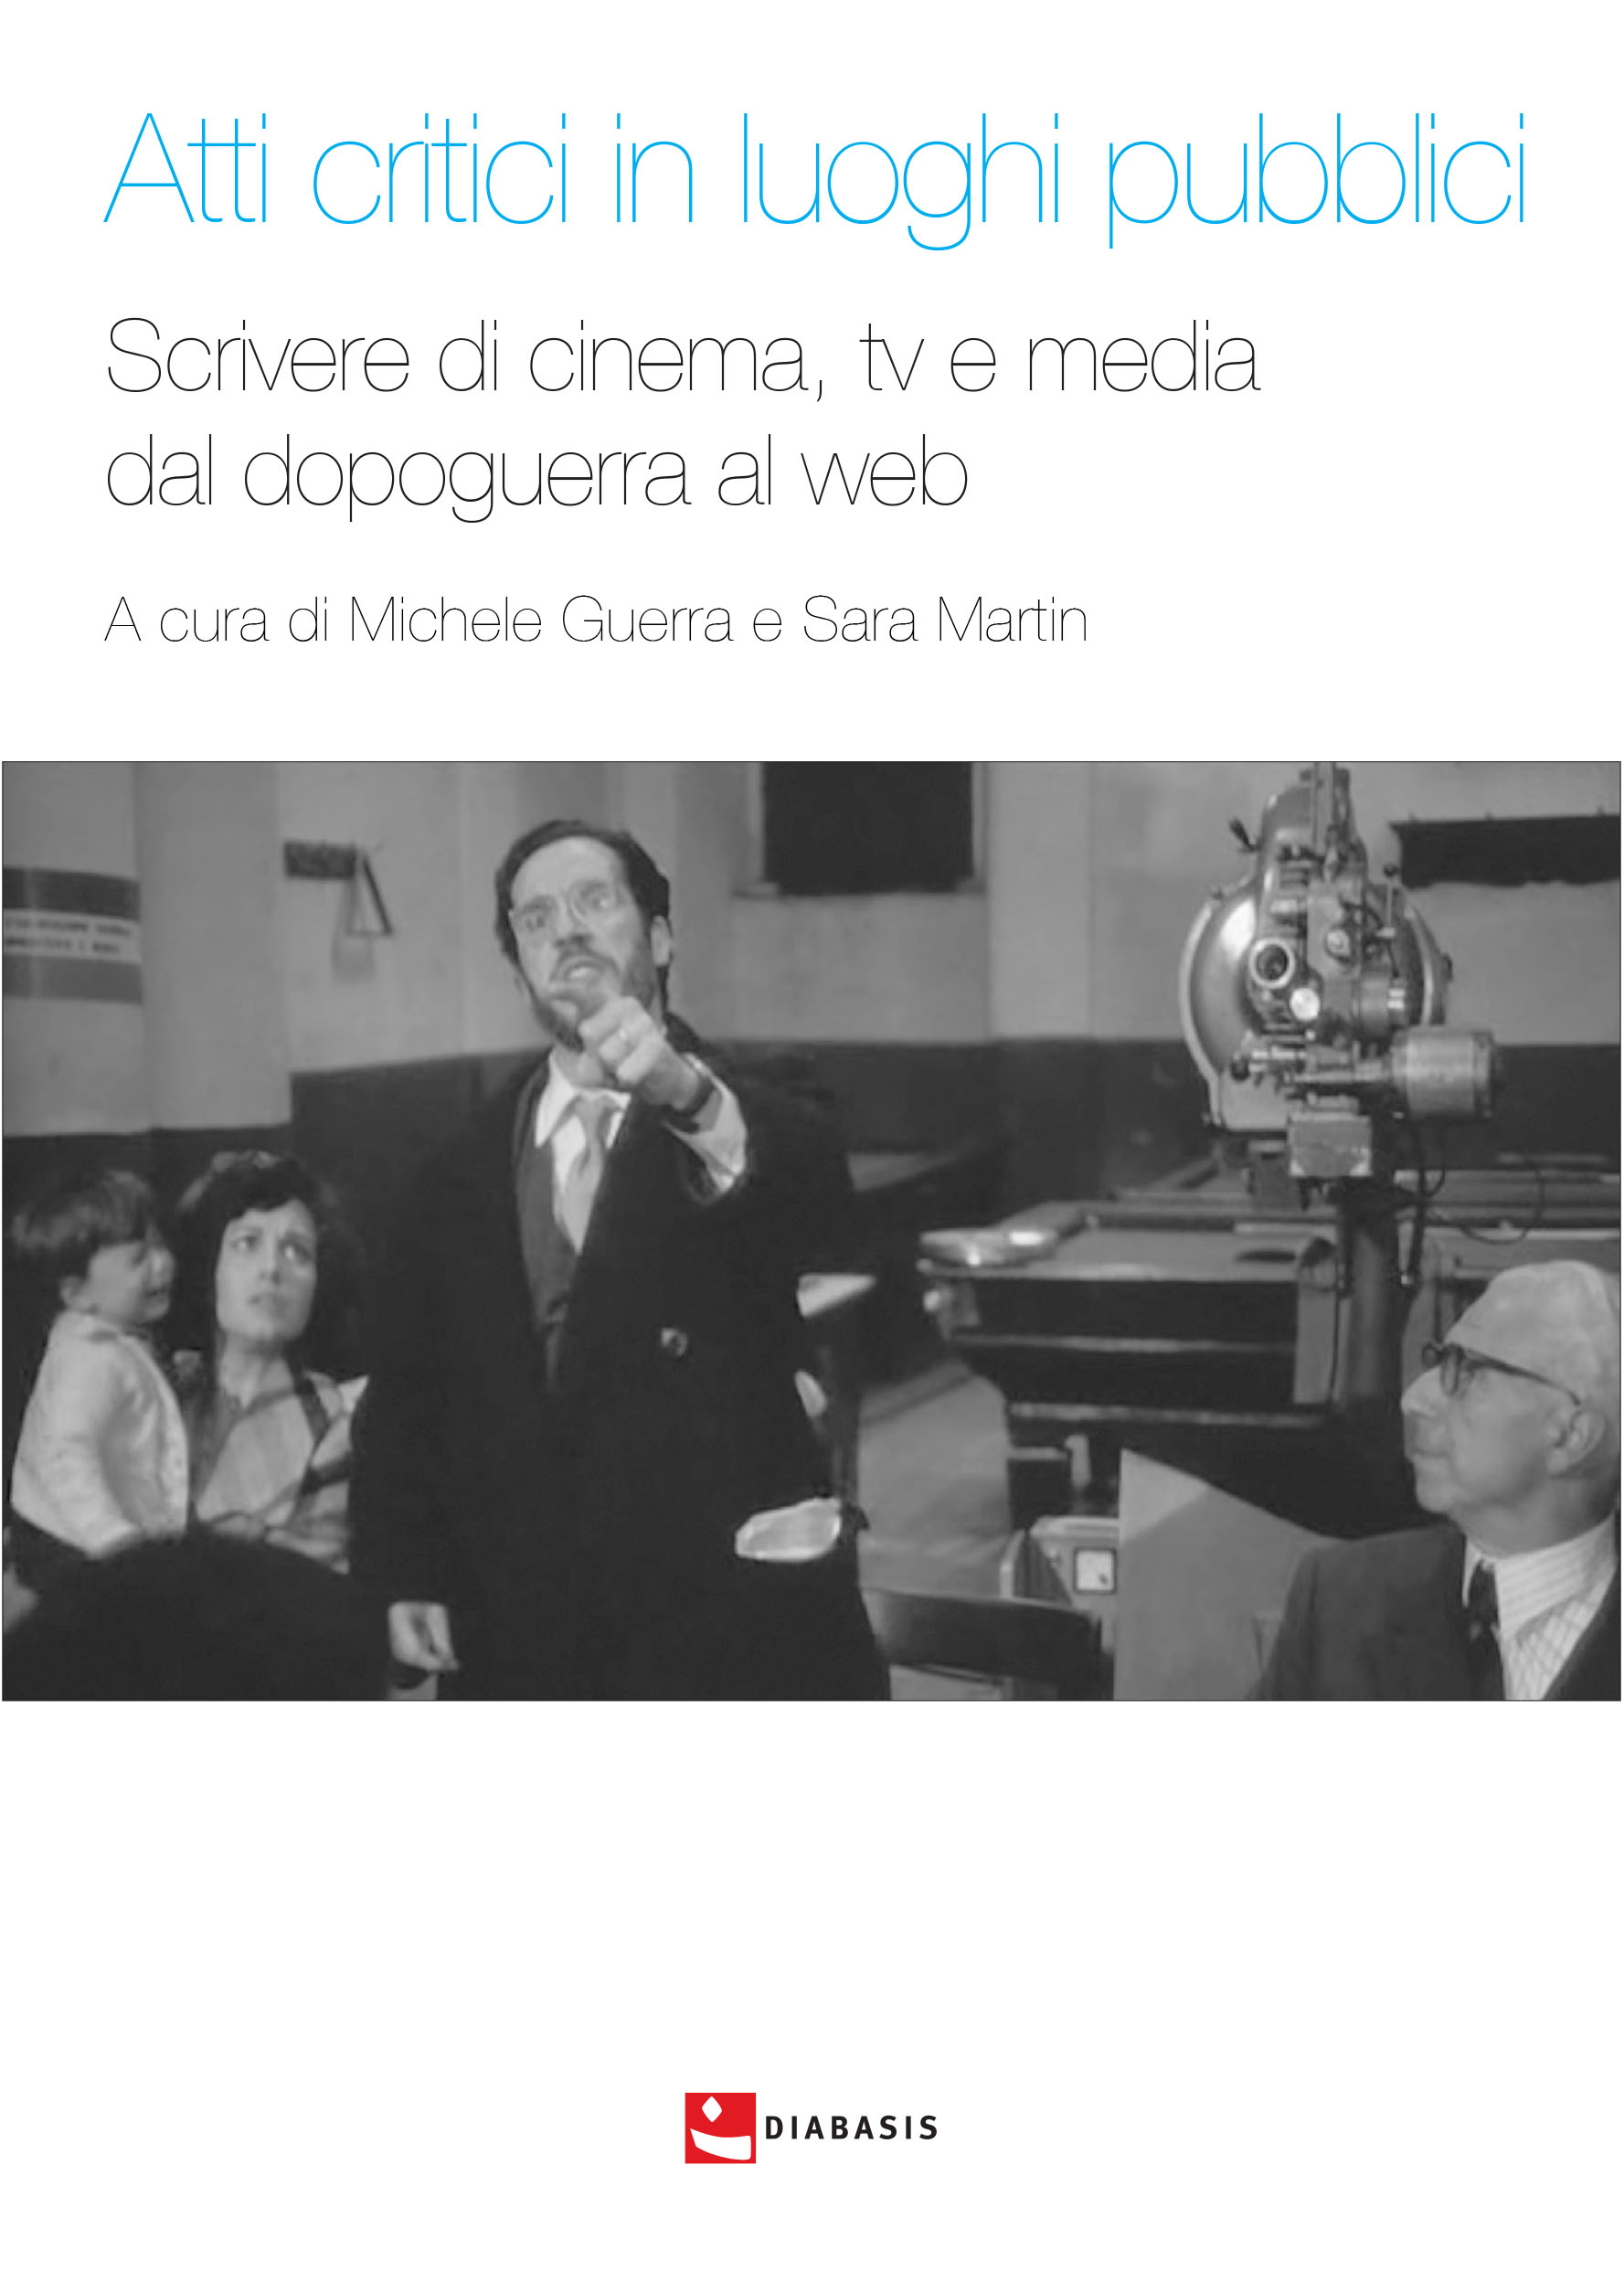 Chapter, Televisione delle origini e critica cinematografica : per una genealogia della critica televisiva in Italia (1953-1960), Diabasis